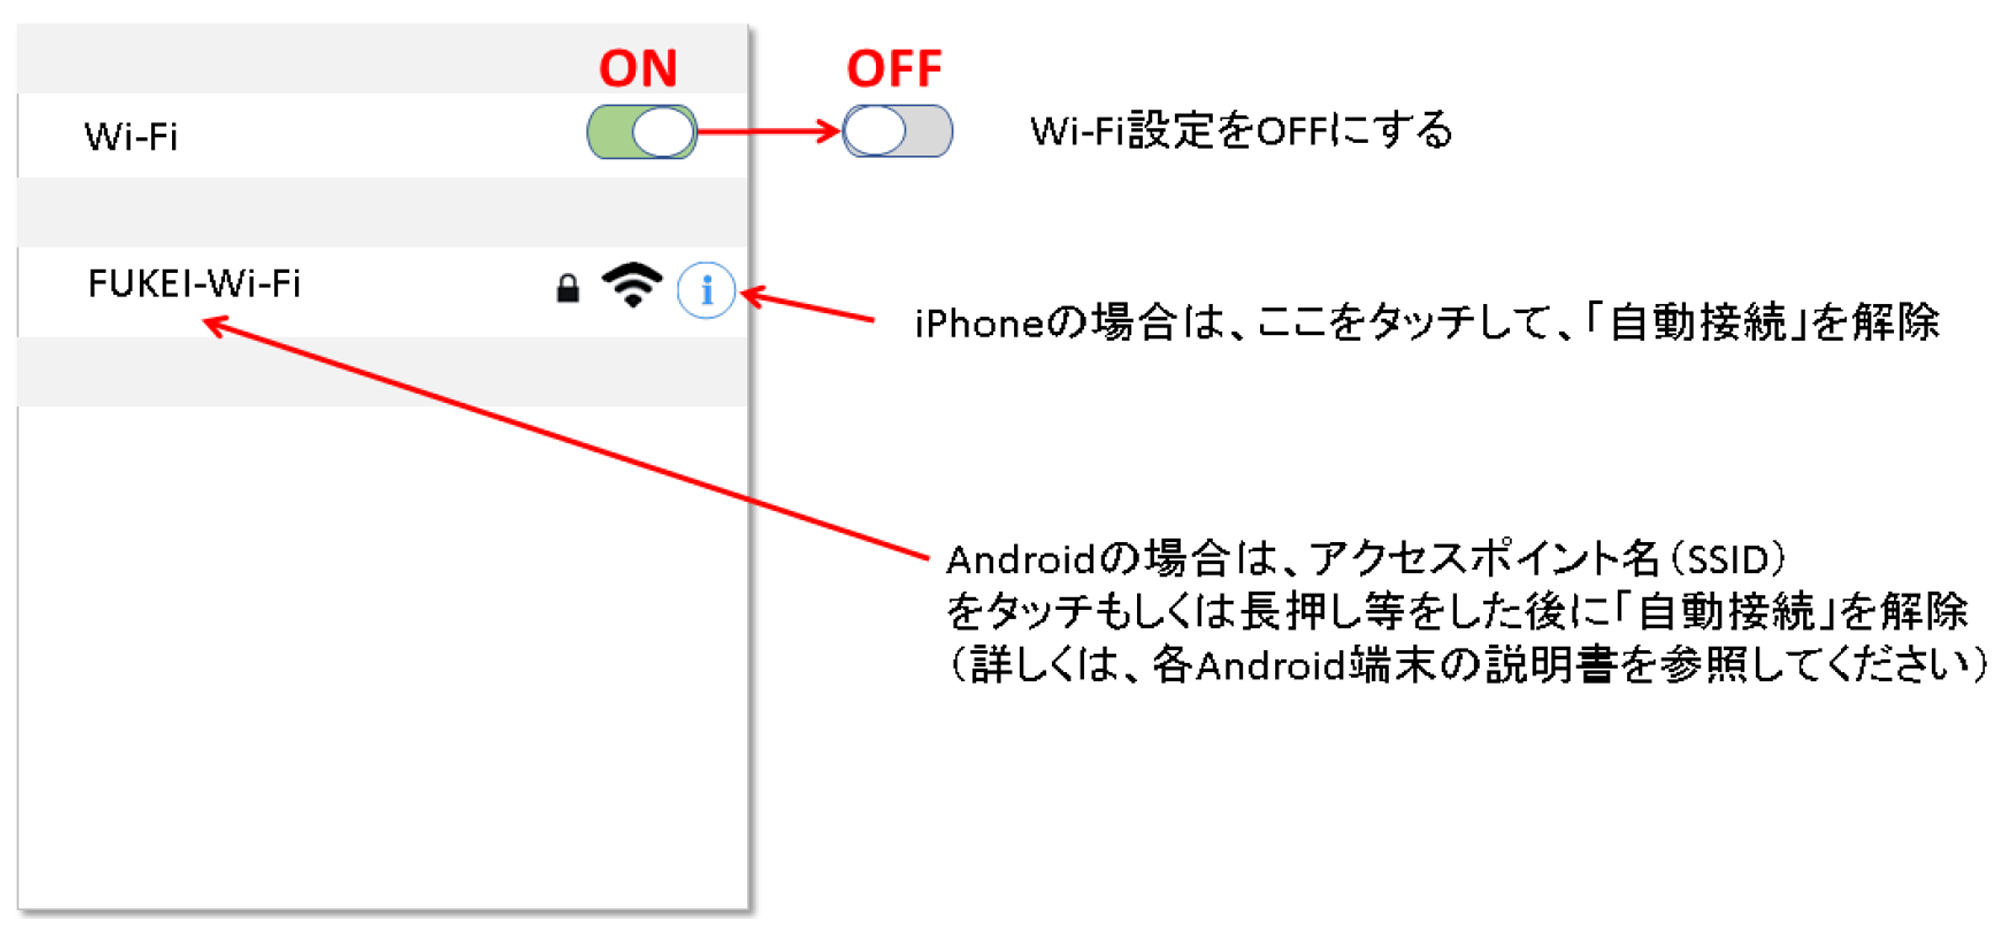 Wi-Fi設定方法の例のイメージ画像